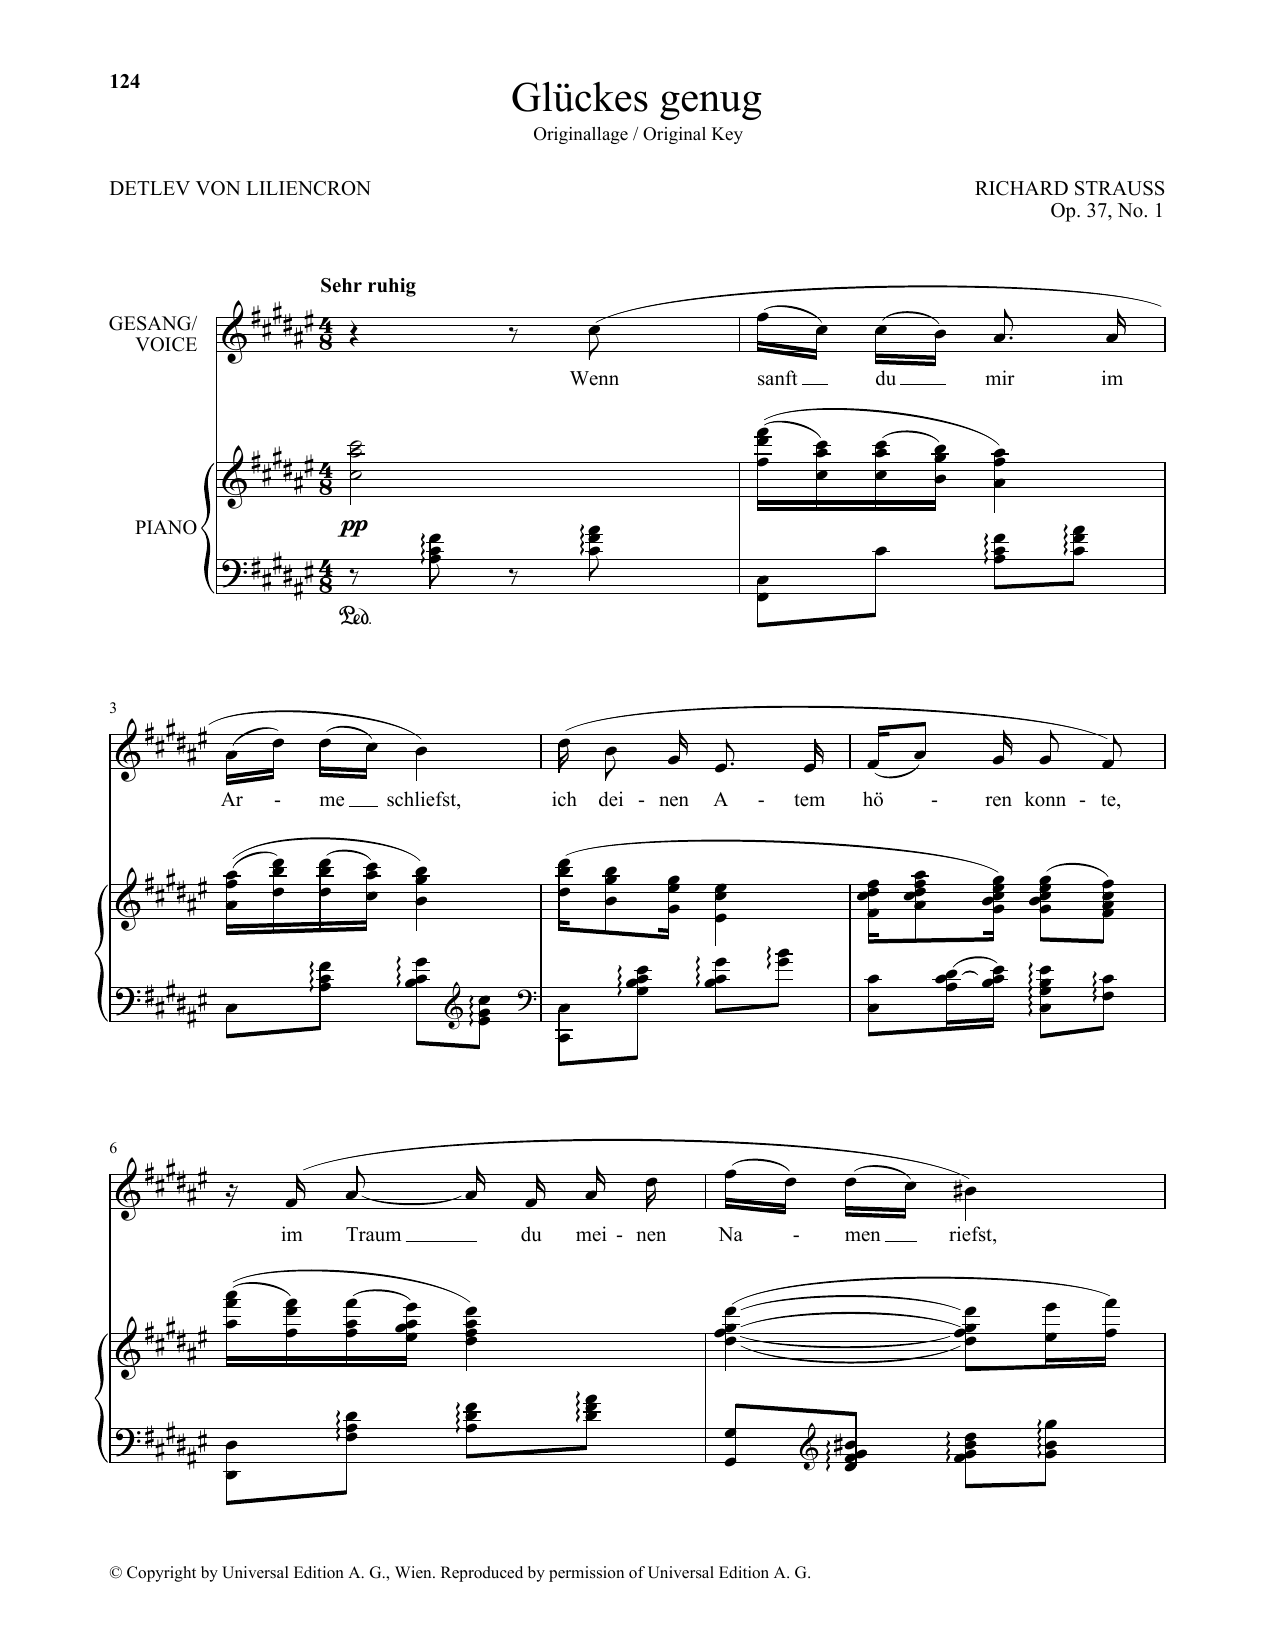 Download Richard Strauss Gluckes Genug (High Voice) Sheet Music